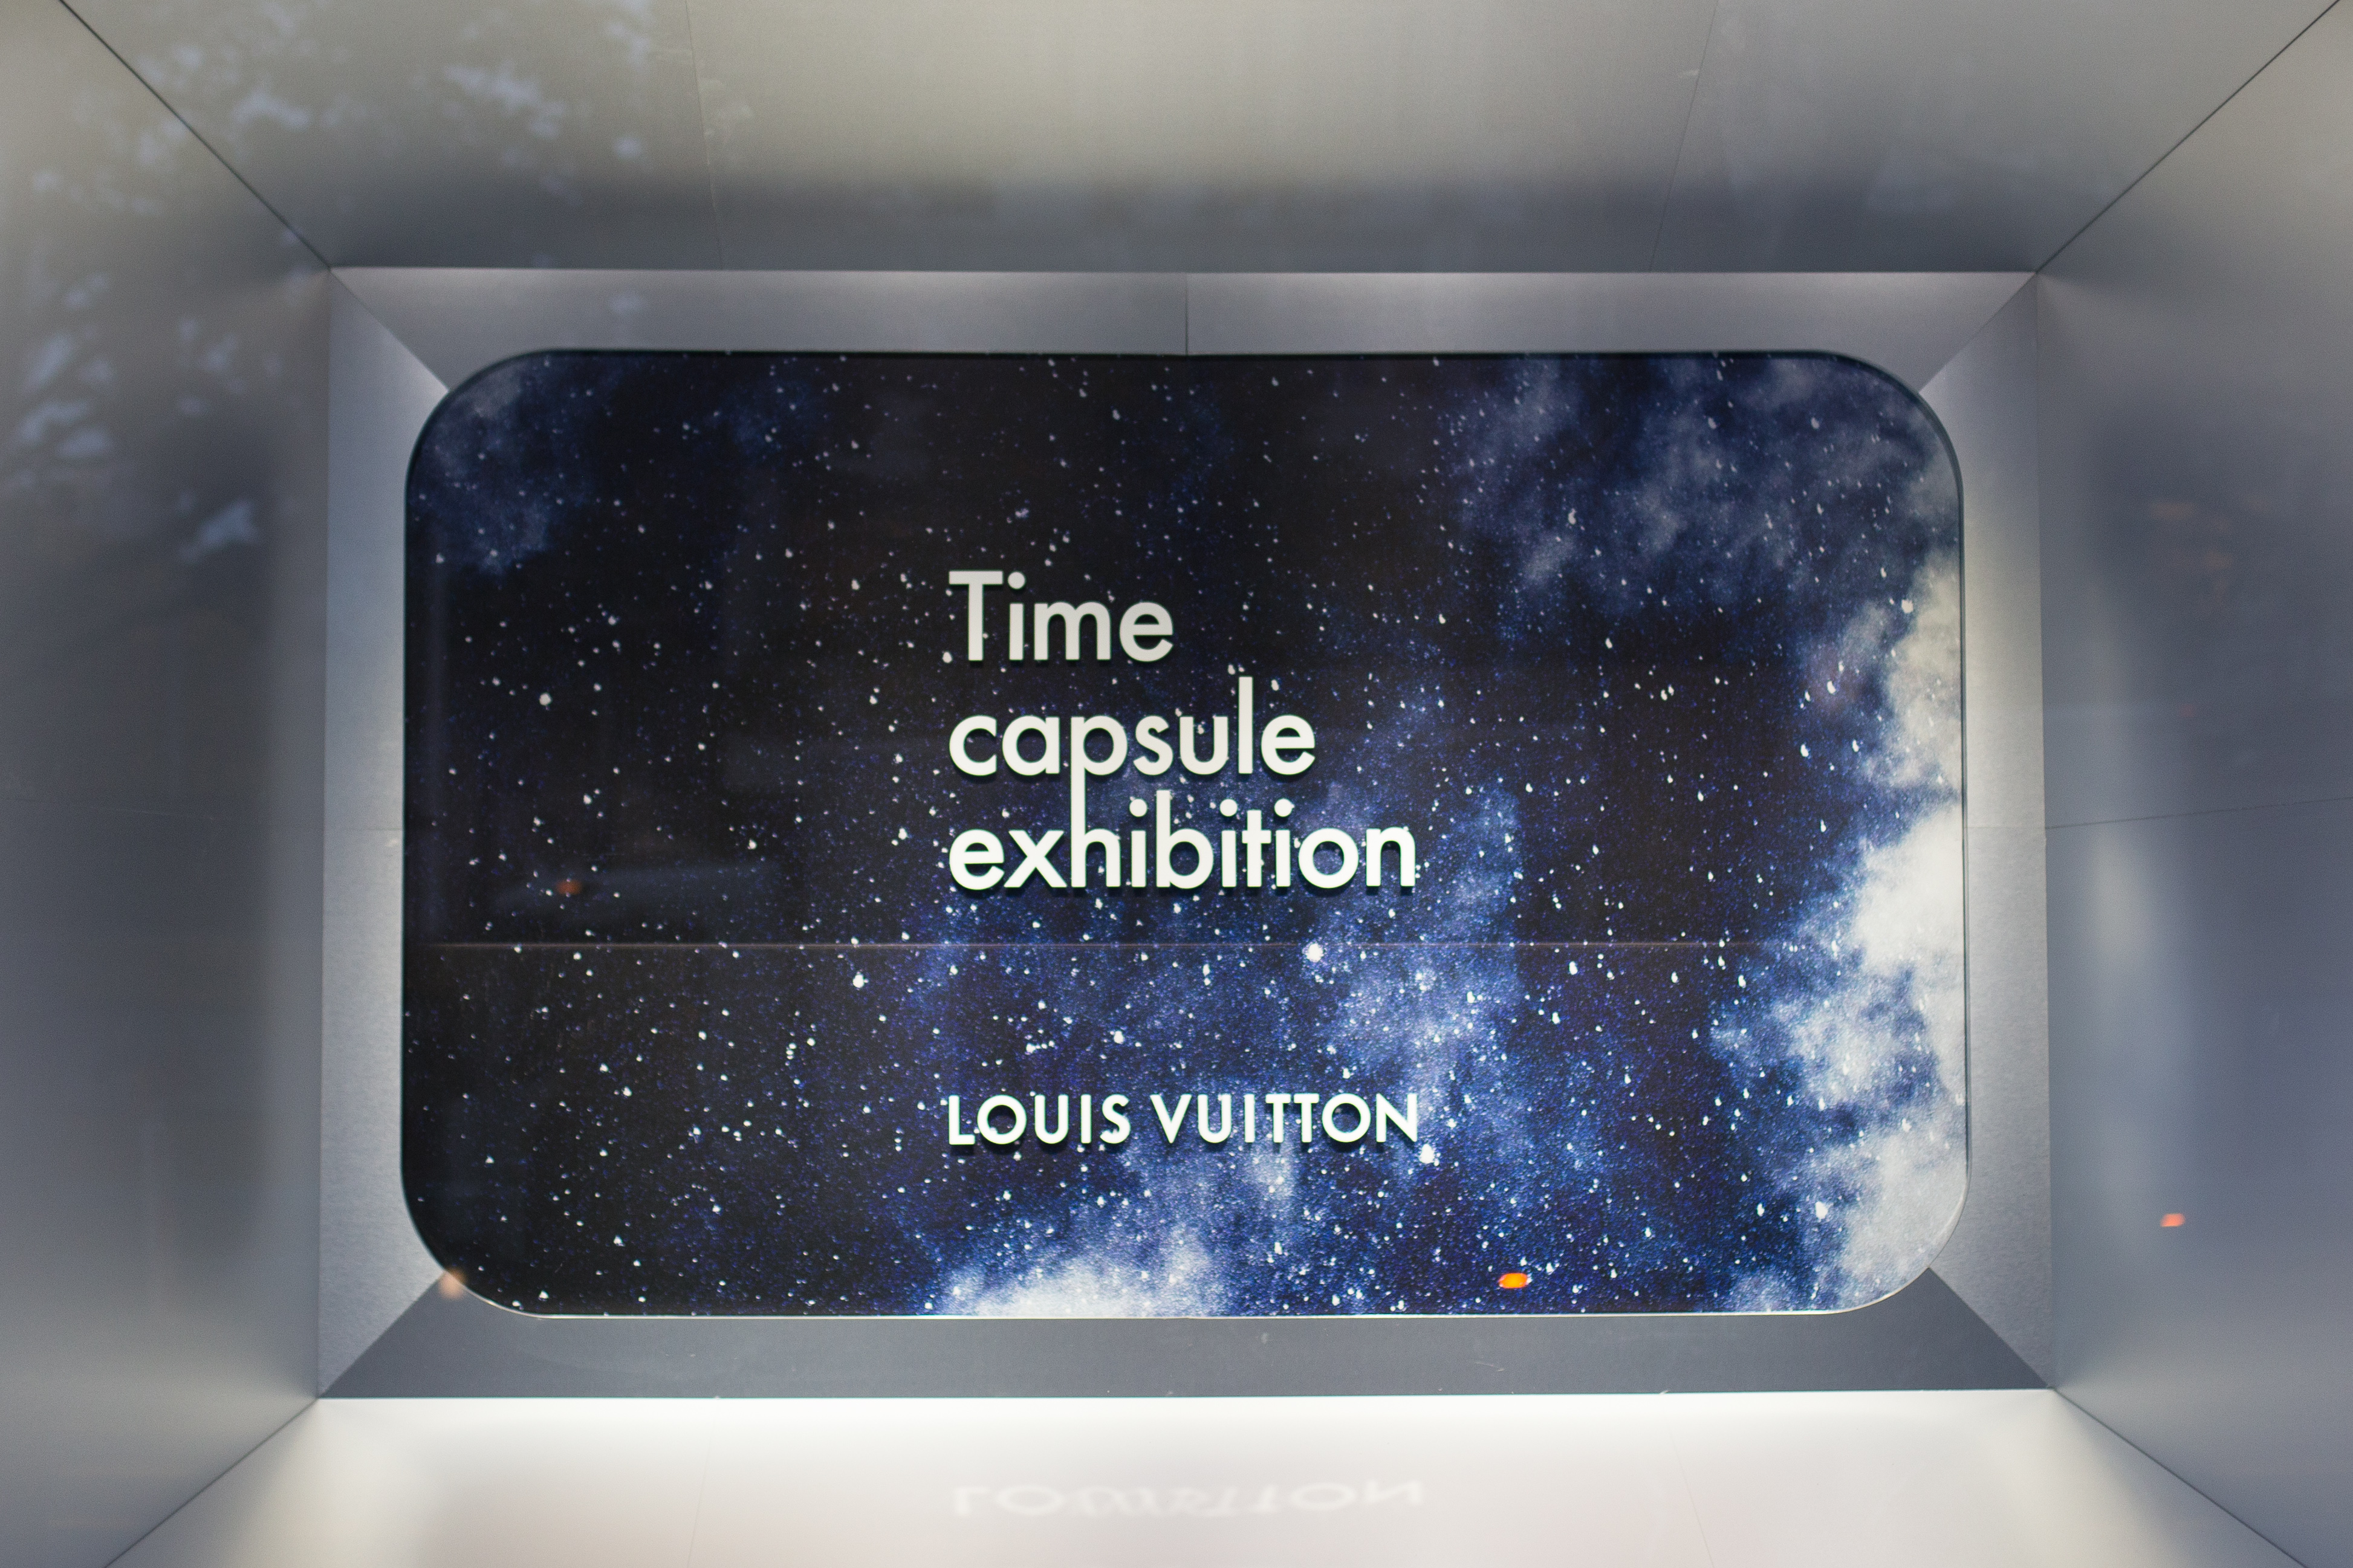 Louis Vuitton's Time Capsule